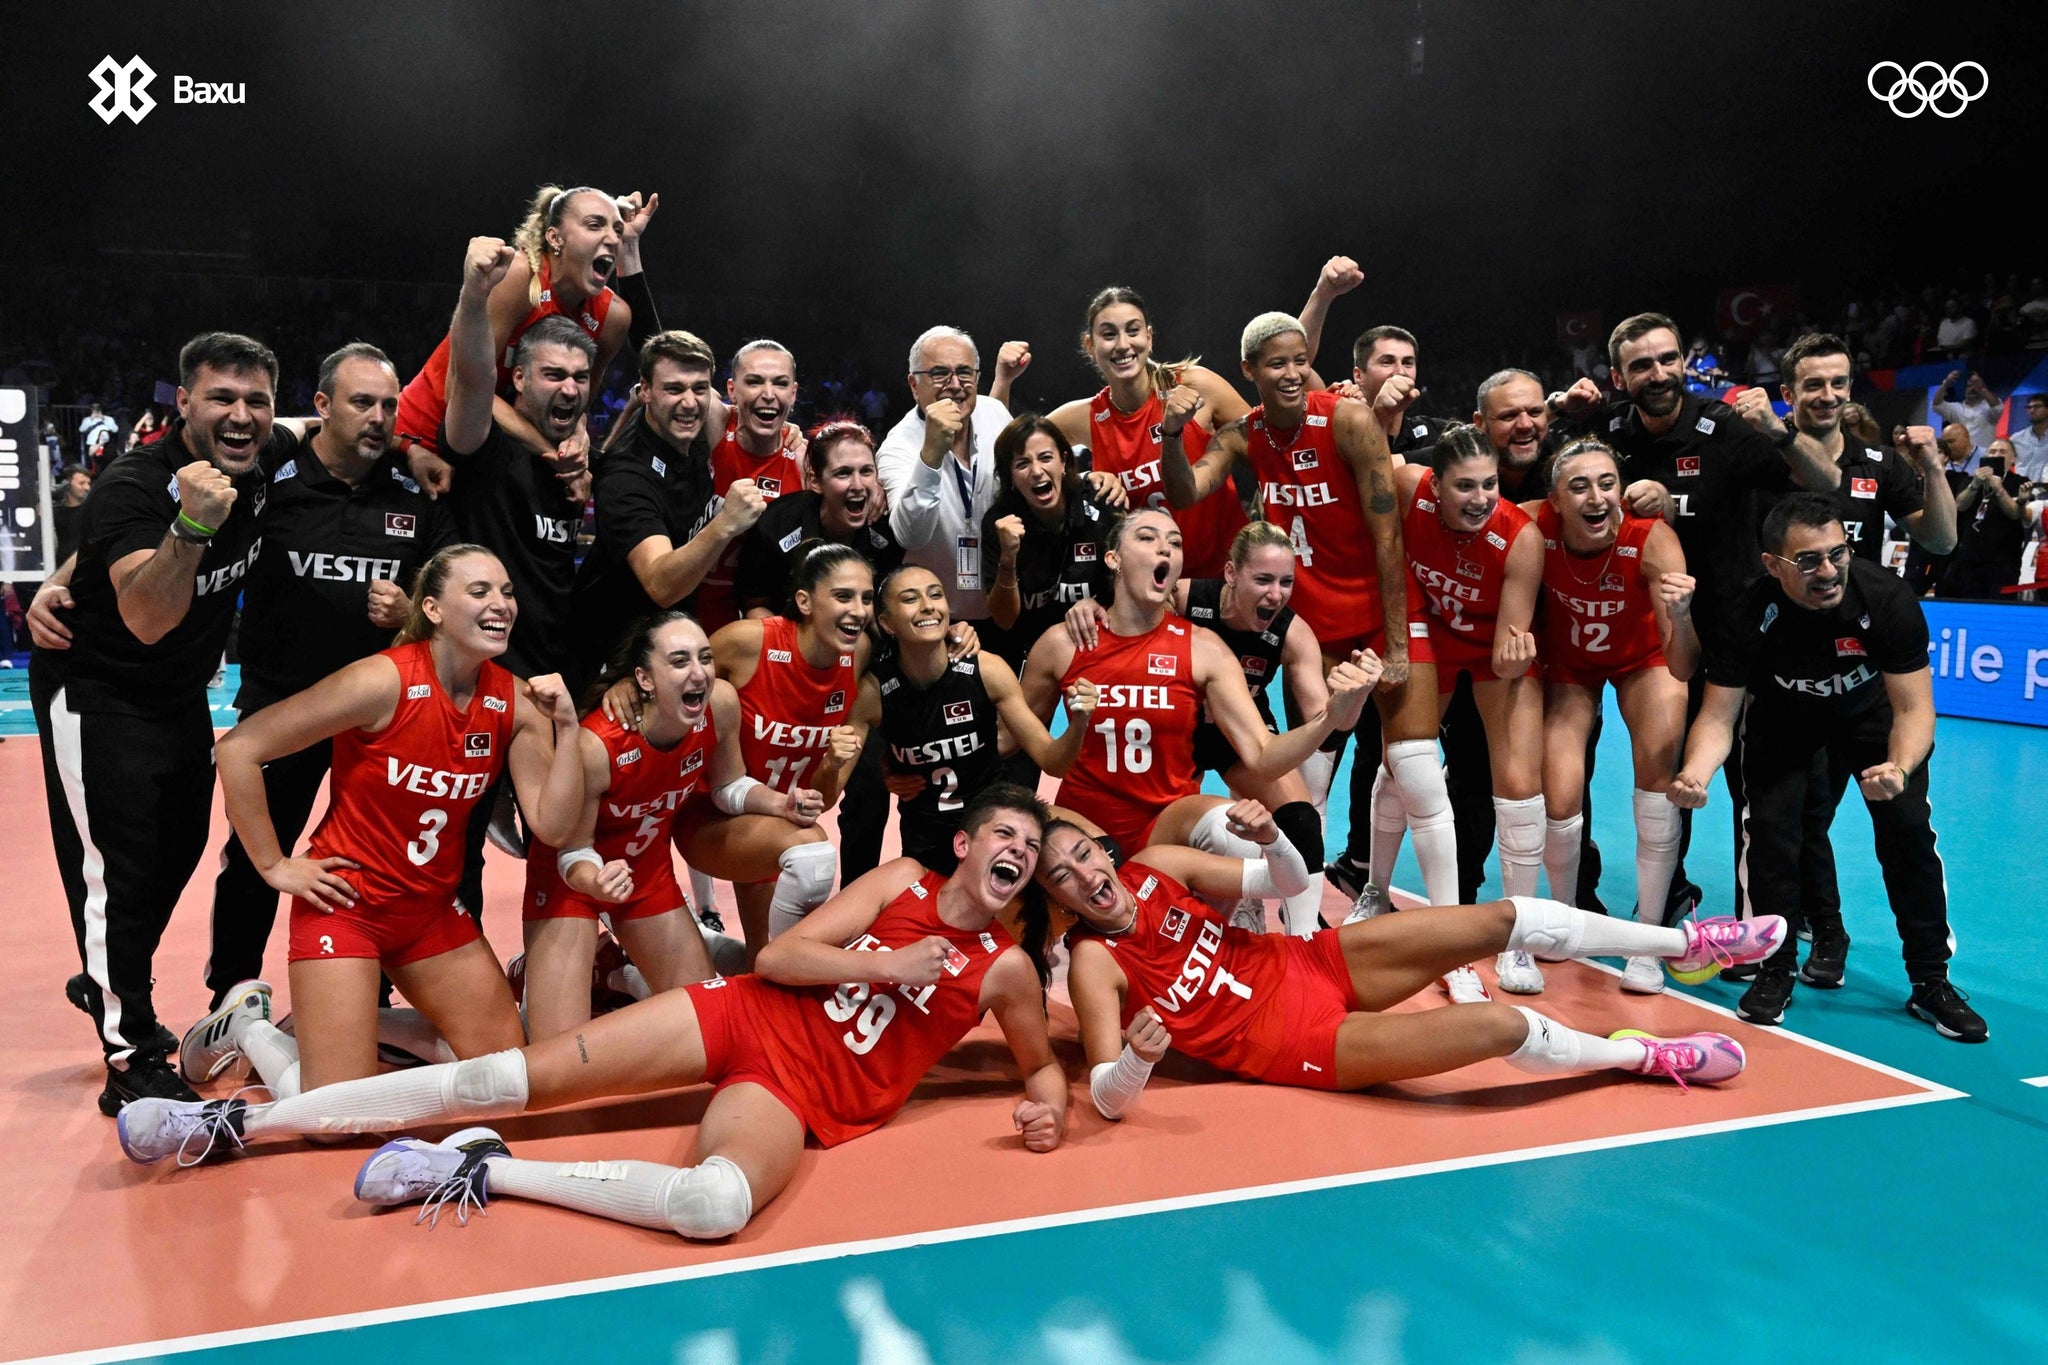 Baxu - Turkye Volleyball Team - Equipo de Voleibol de Turquía - Juegos Olímpicos 2024 - Olympic Games Paris 2024